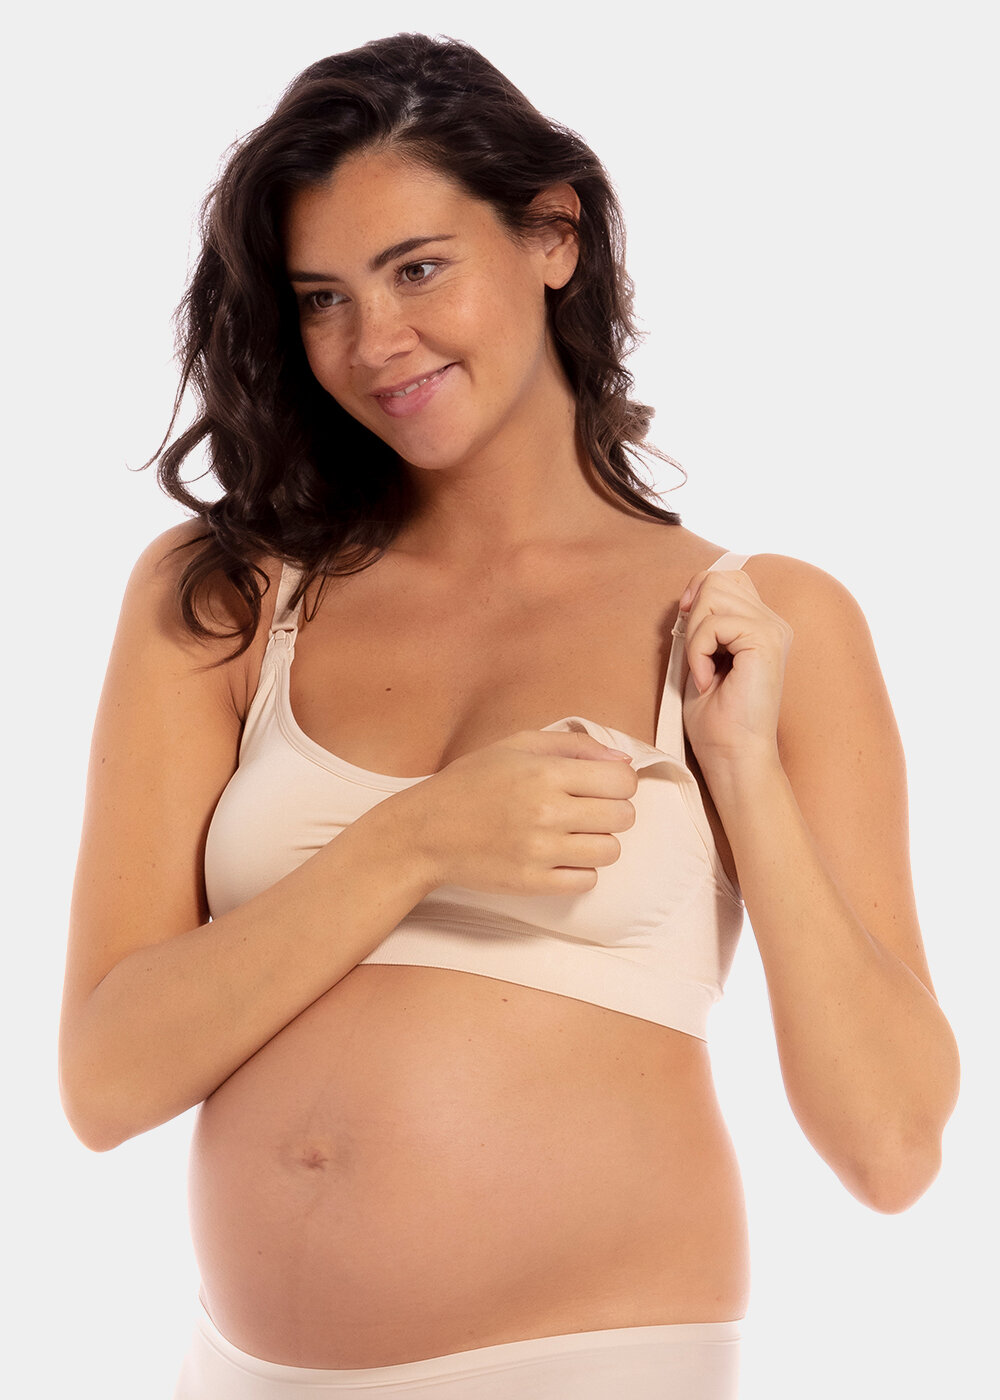 maternity nursing bra pregnant women mother